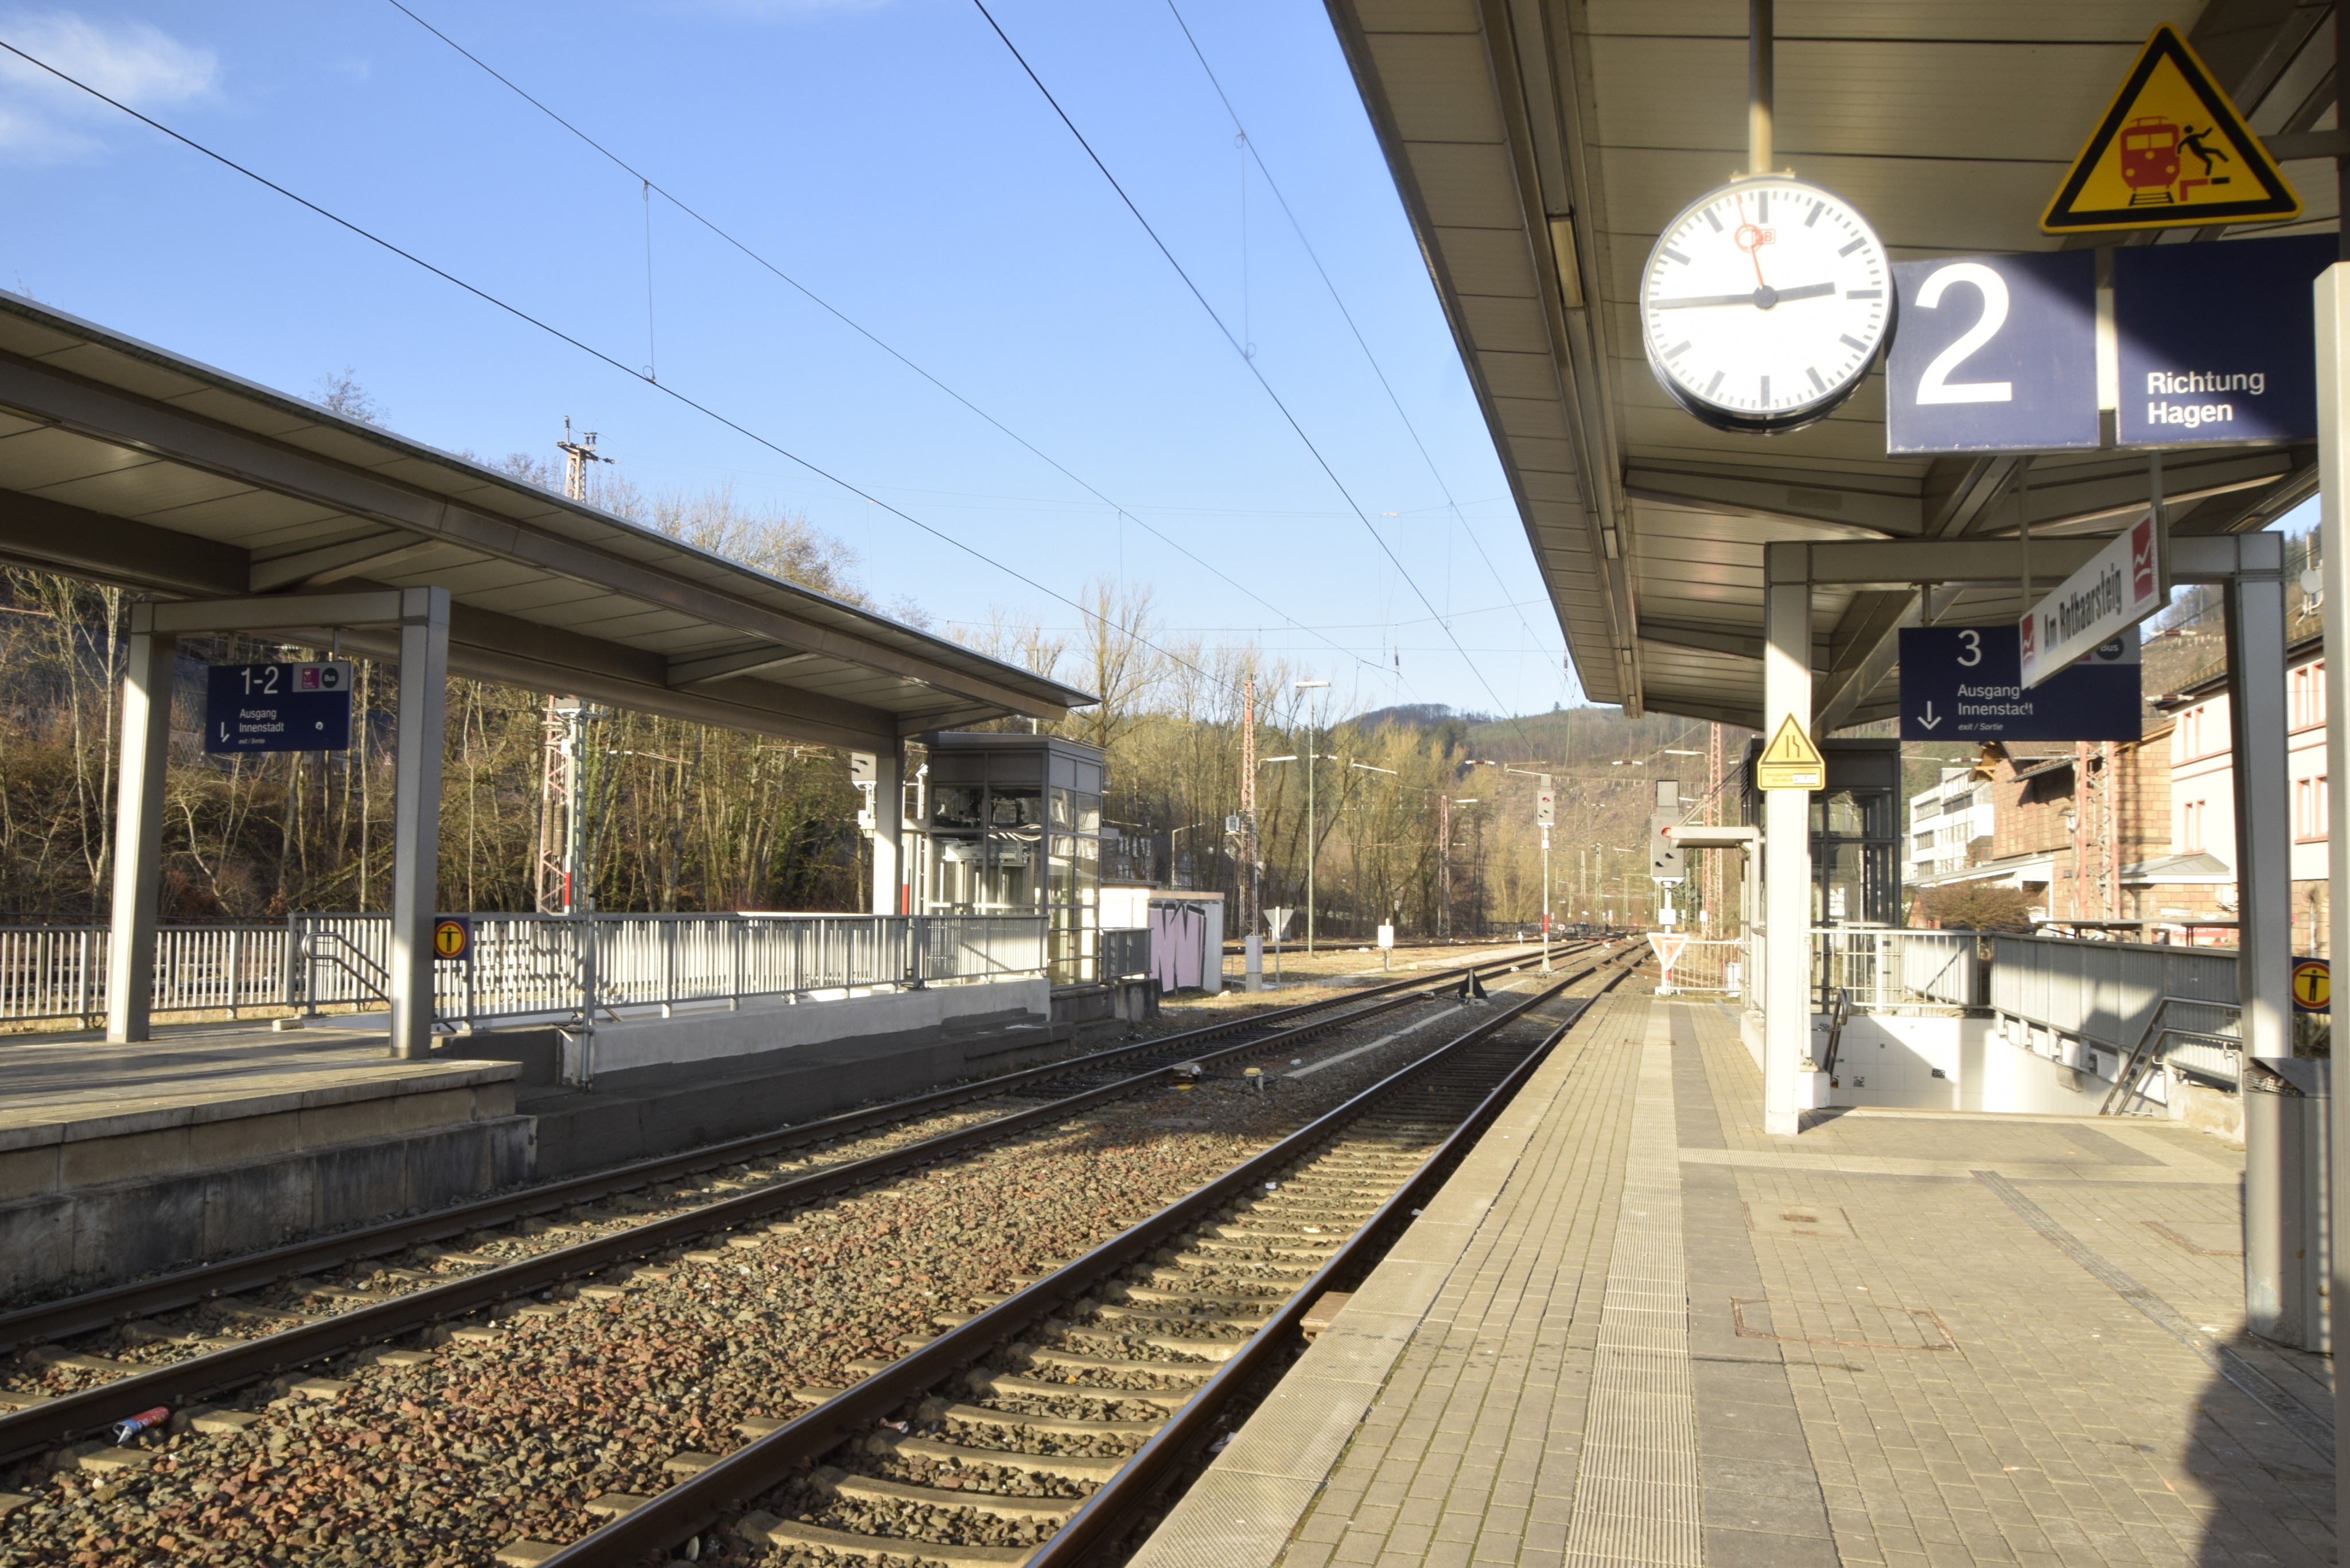 Der GDL-Streik macht vielen Bahnreisenden einen Strich durch die Rechnung. Auch am Altenhundemer Bahnhof müssen Fahrgäste länger warten oder sich eine spontane Alternative überlegen. von Lorena Klein